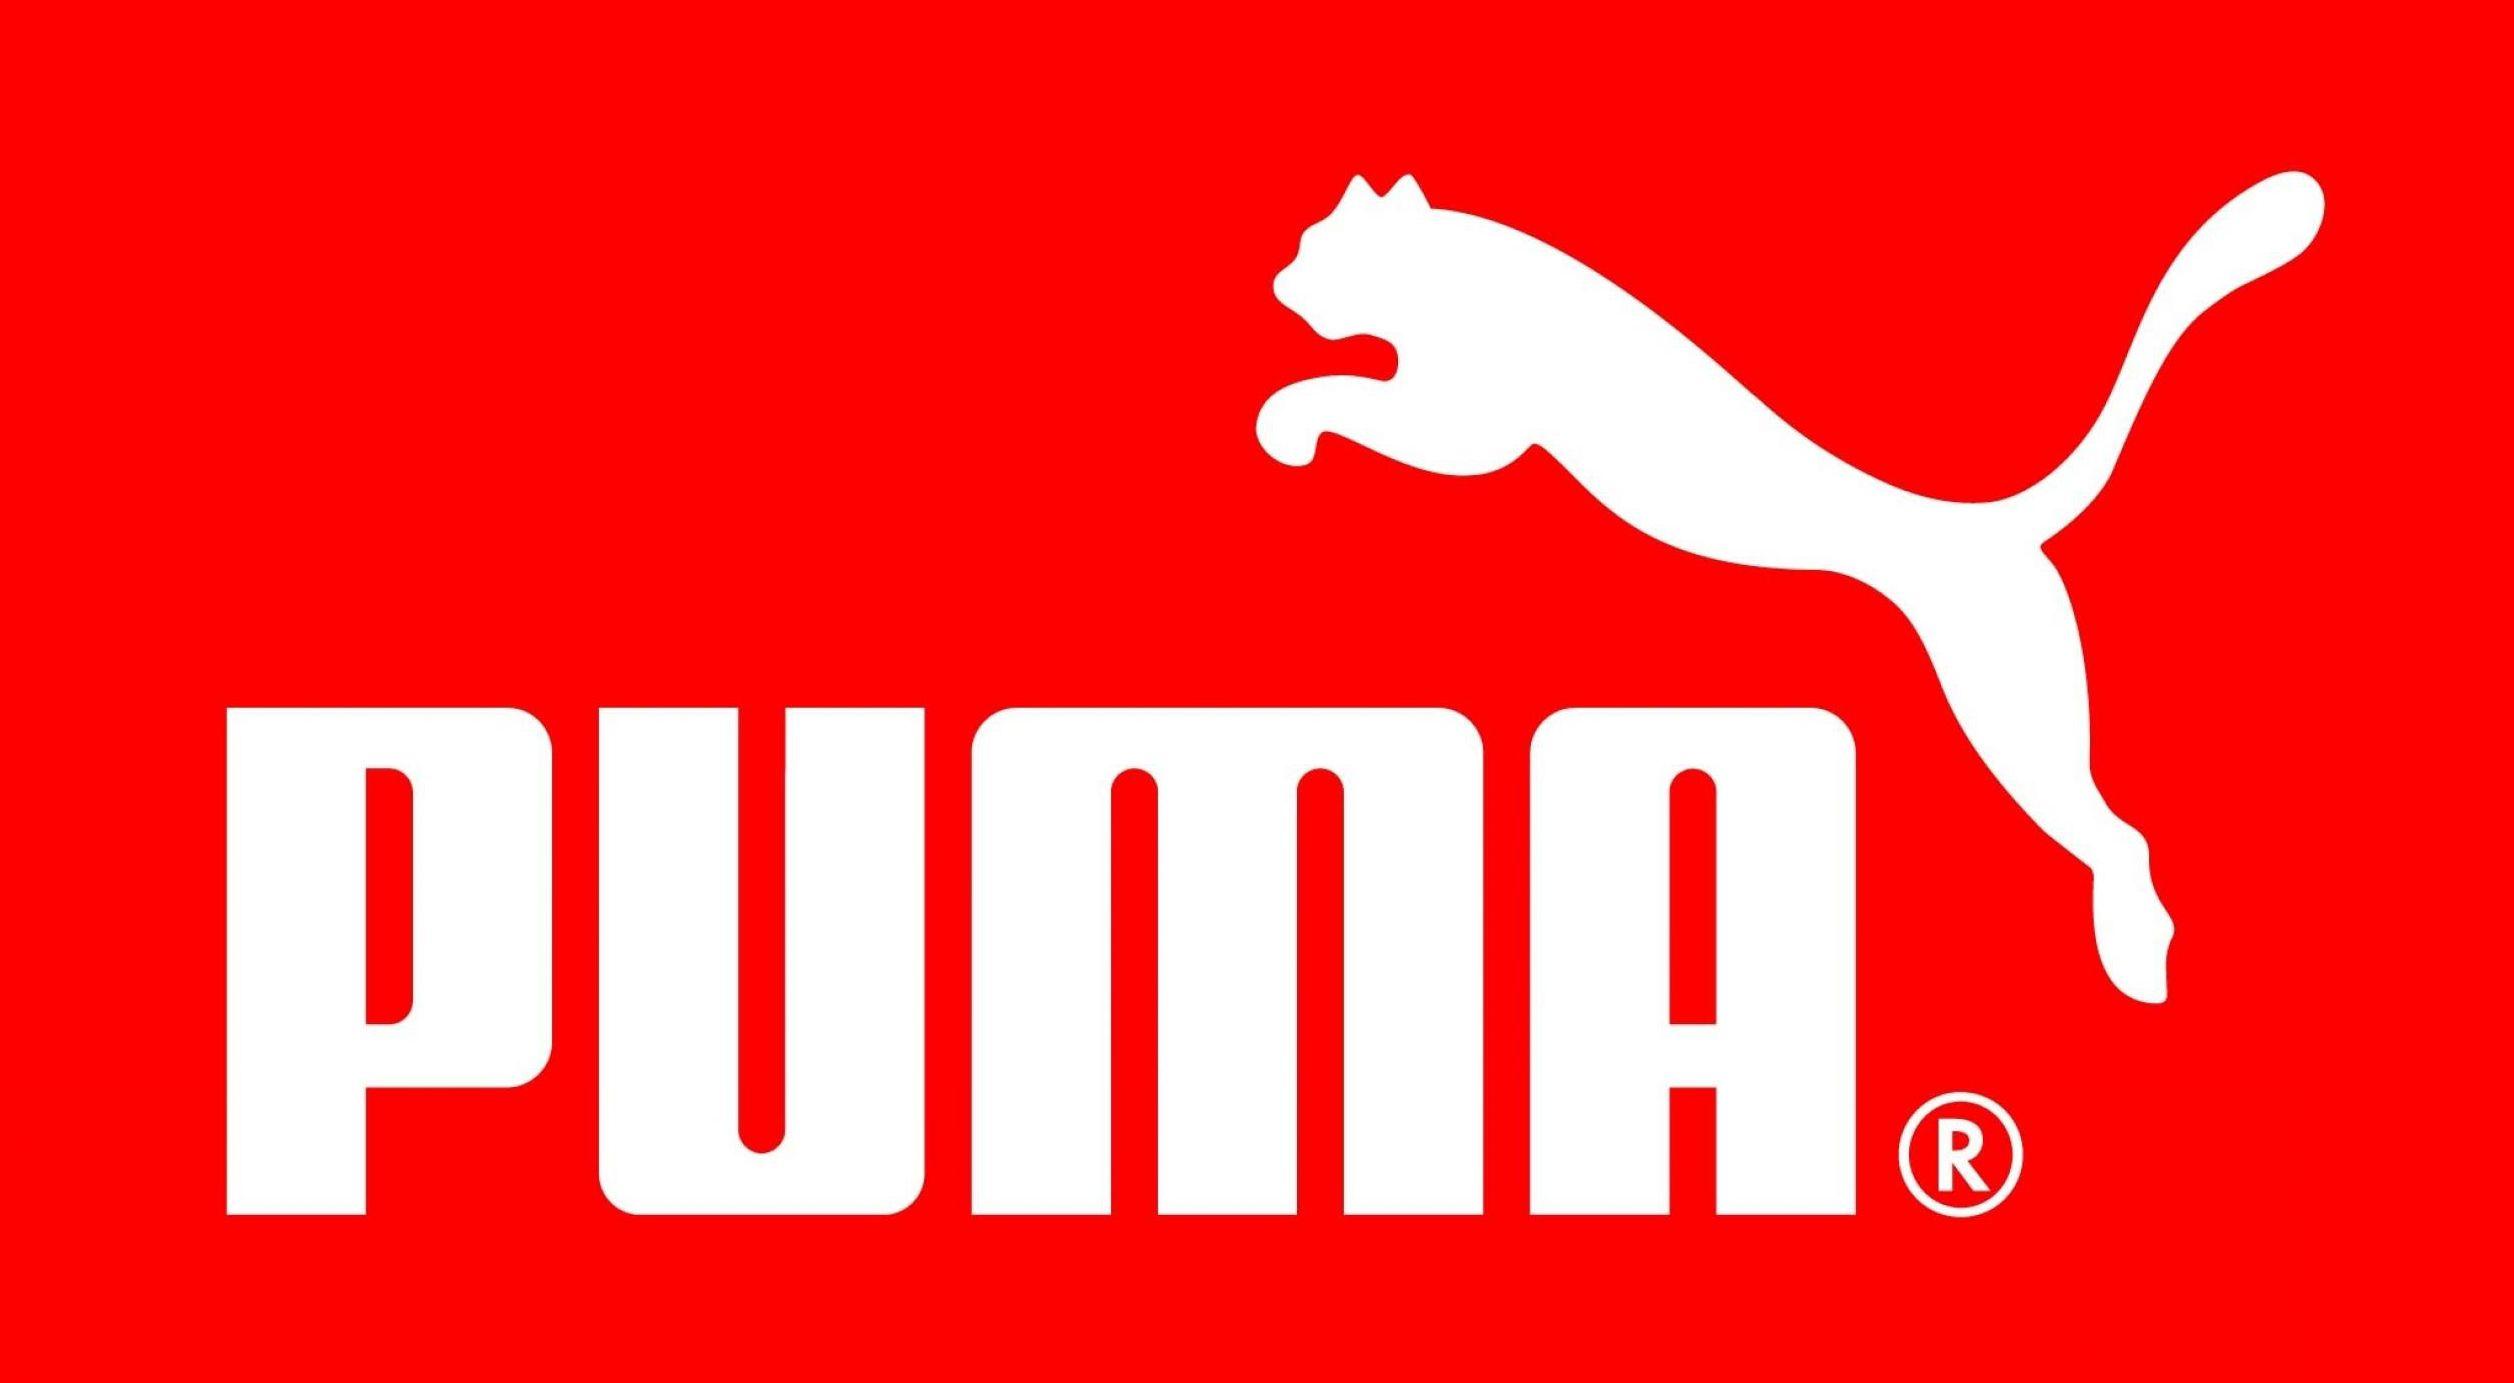 Black Puma Logo - PUMA Logo, PUMA Symbol, Meaning, History and Evolution